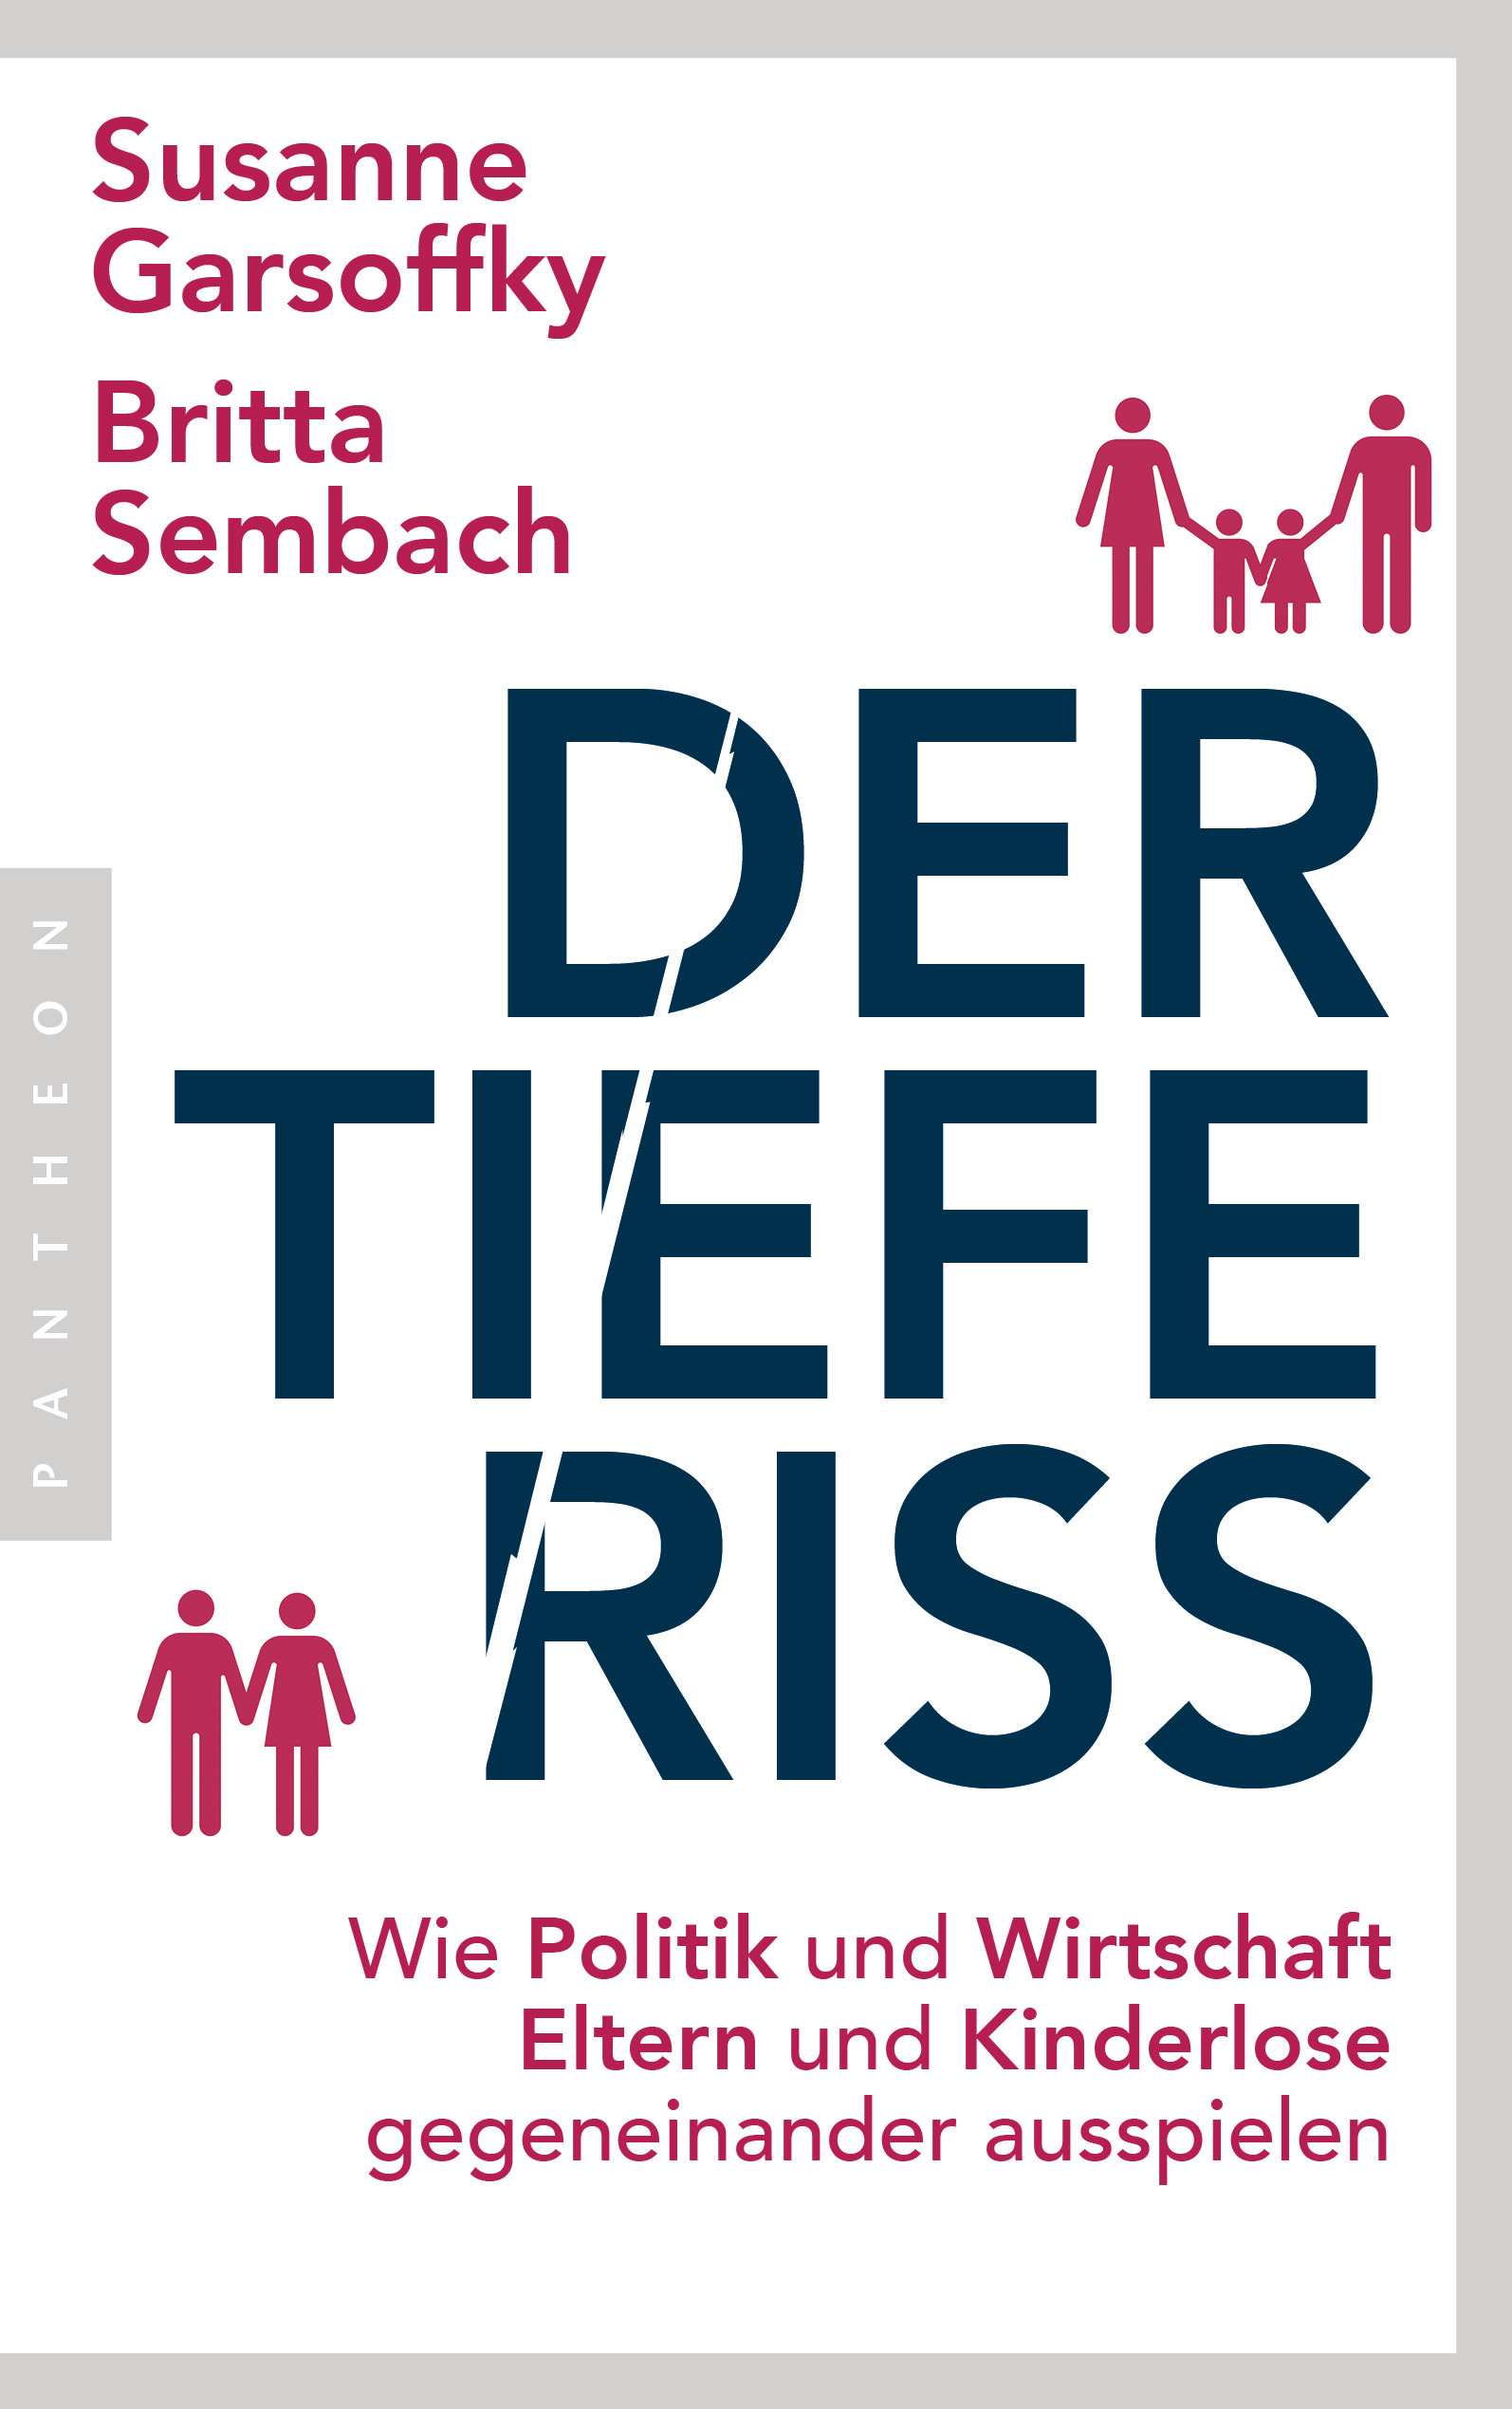 Buchcover: Susanne Garsoffky, Britta Sembach: Der tiefe Riss. Pantheon Verlag